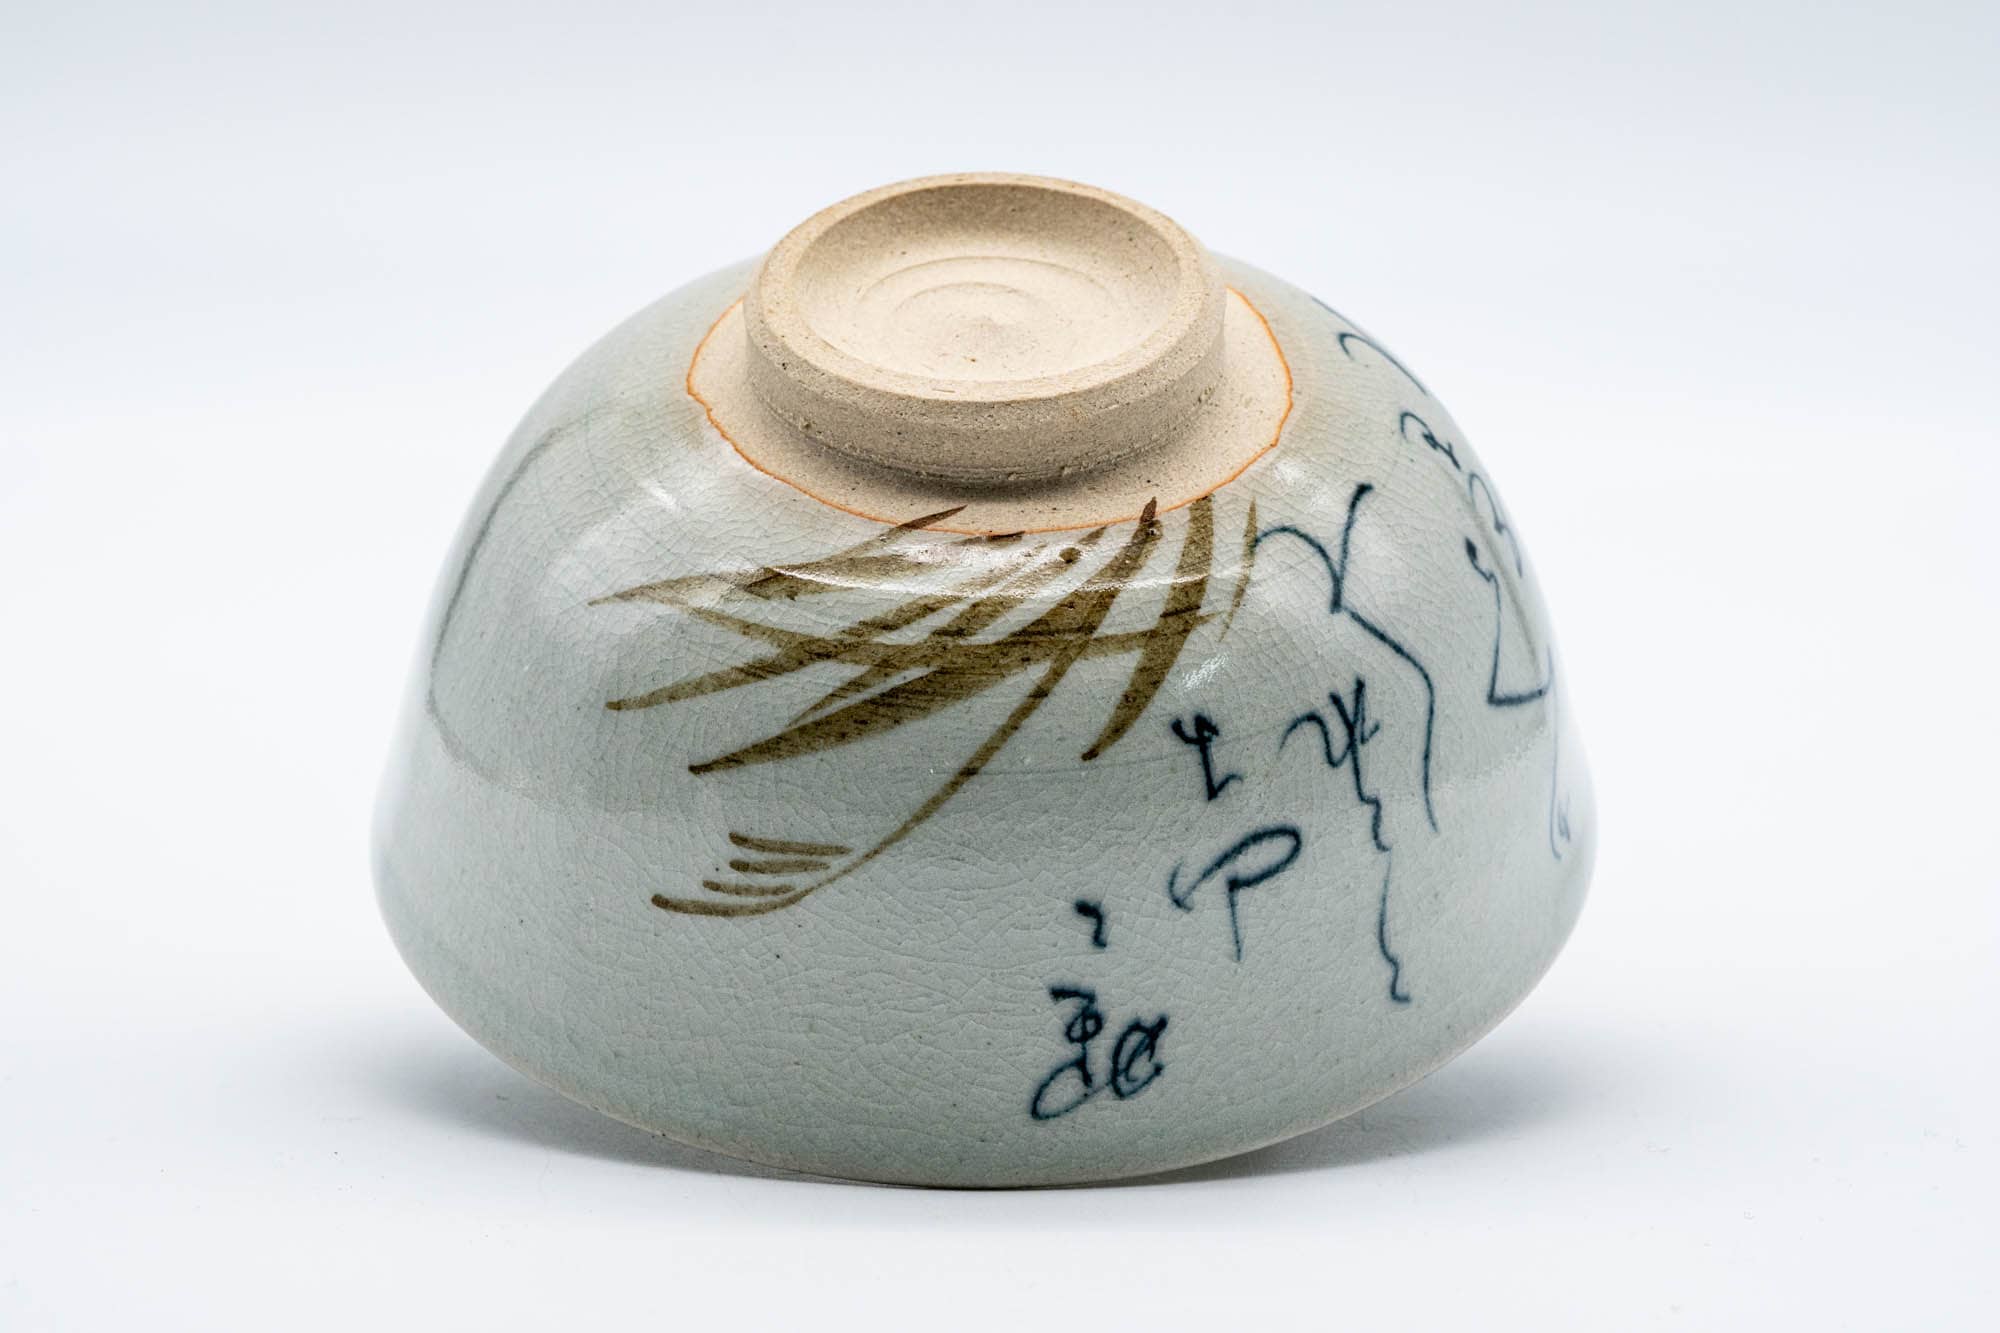 Japanese Matcha Bowl - 松寿窯 Shōju Kiln - Calligraphy Painted Rengetsu-style Kyo-yaki Chawan - 200ml